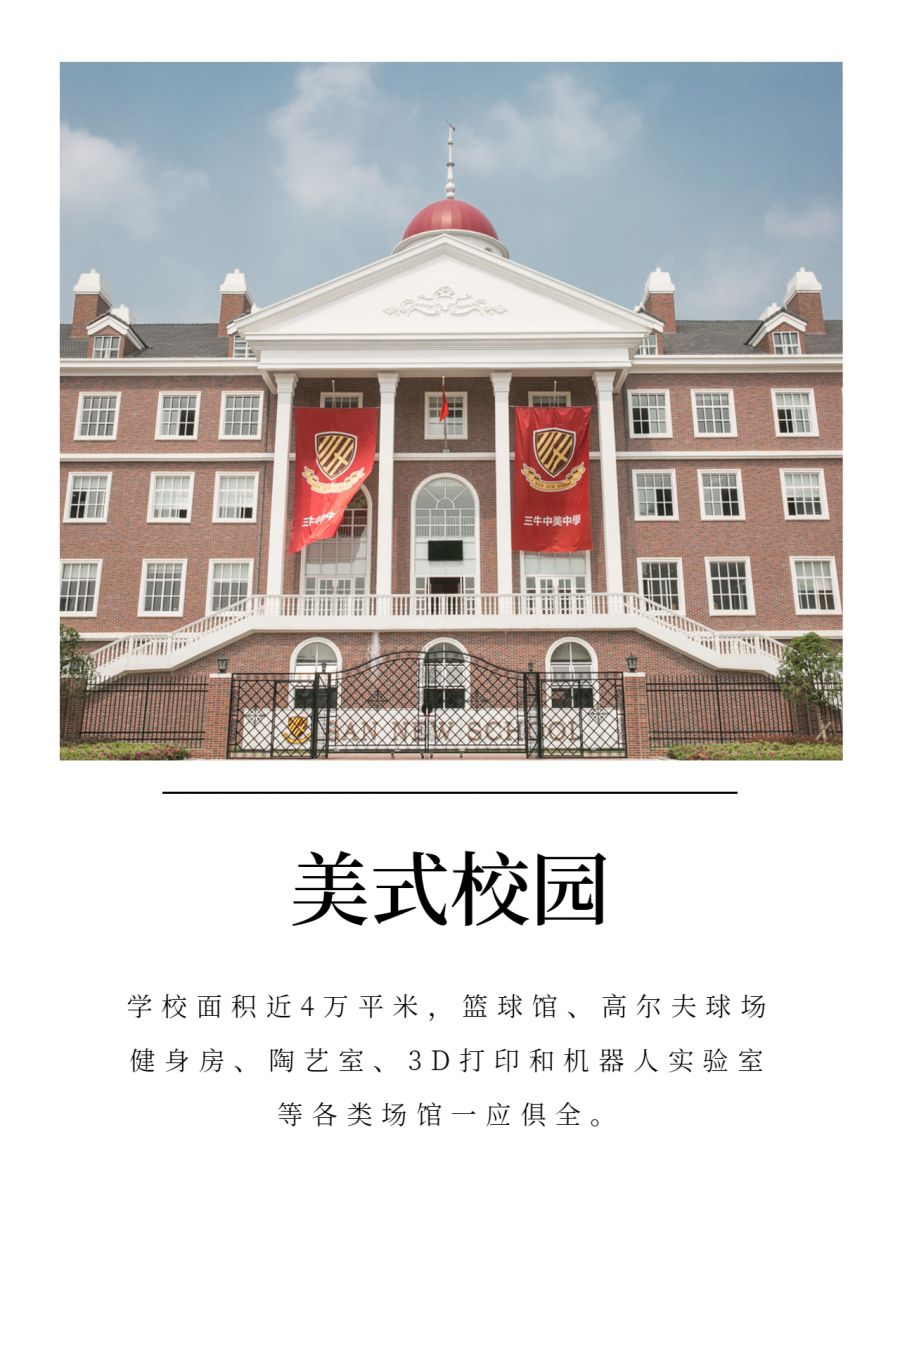 报名 | 10月25日，武汉三牛中美中学开放日（课程体验+咨询答疑）